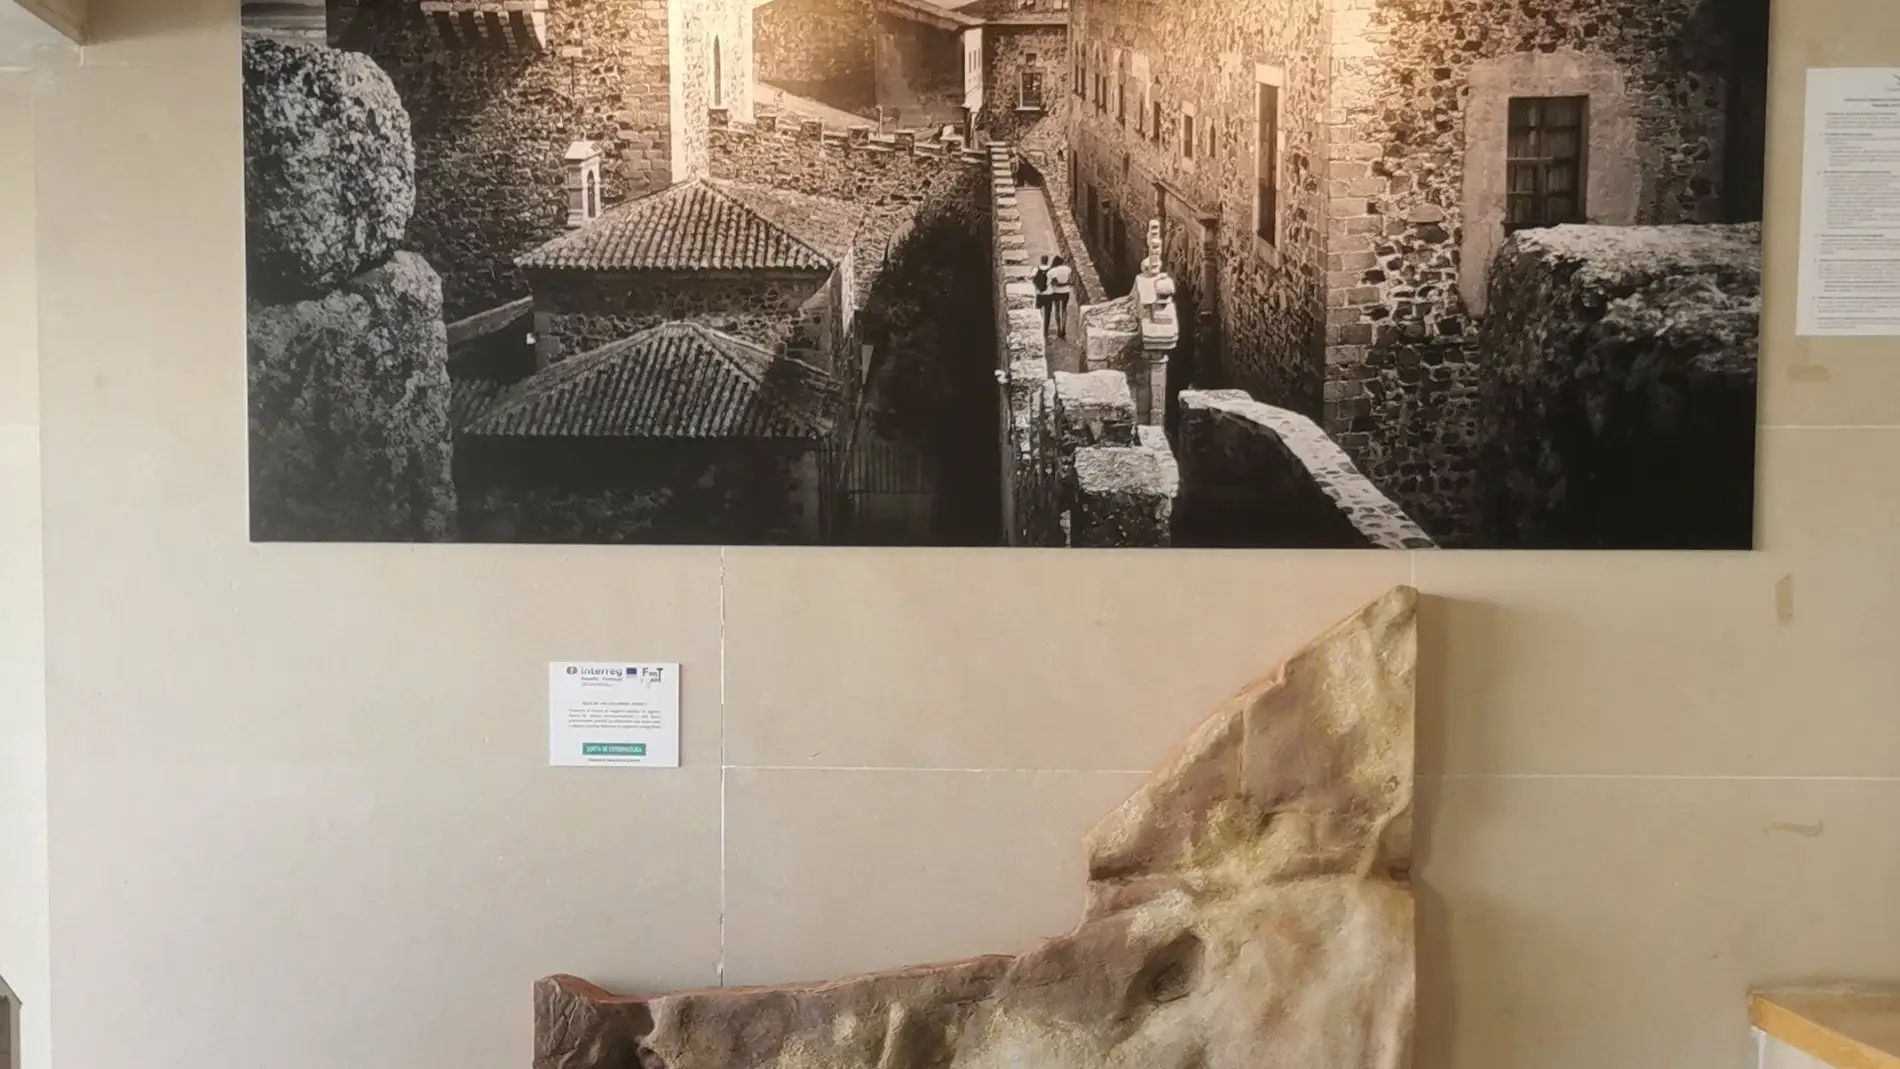 Réplicas de algunos fragmentos de lienzos y paneles de la Cueva de Maltravieso se exponen en edificios de Cáceres